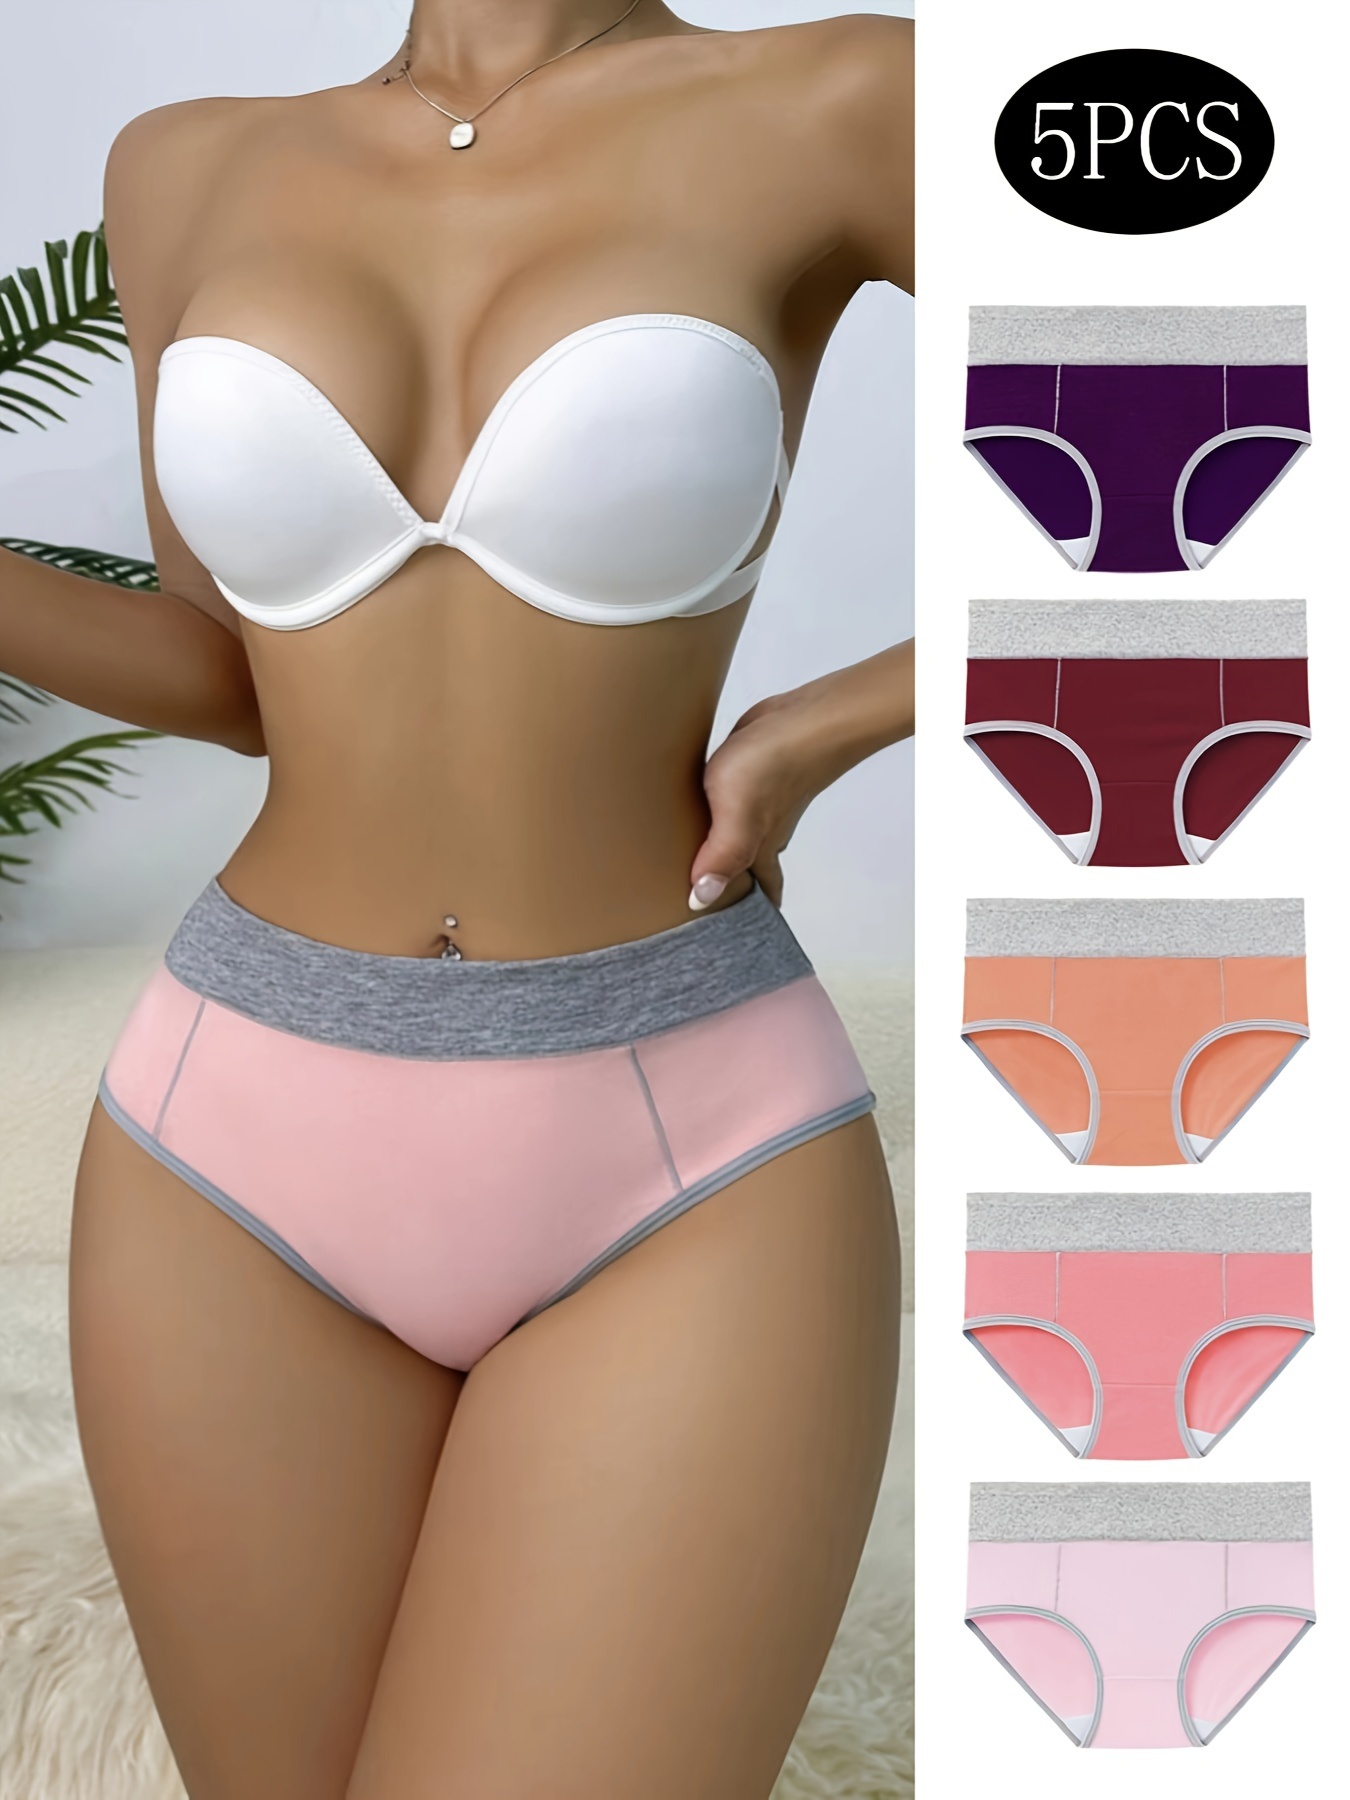 5pcs Women's Low Waist Sexy Girls Underwear Cotton Striped Big